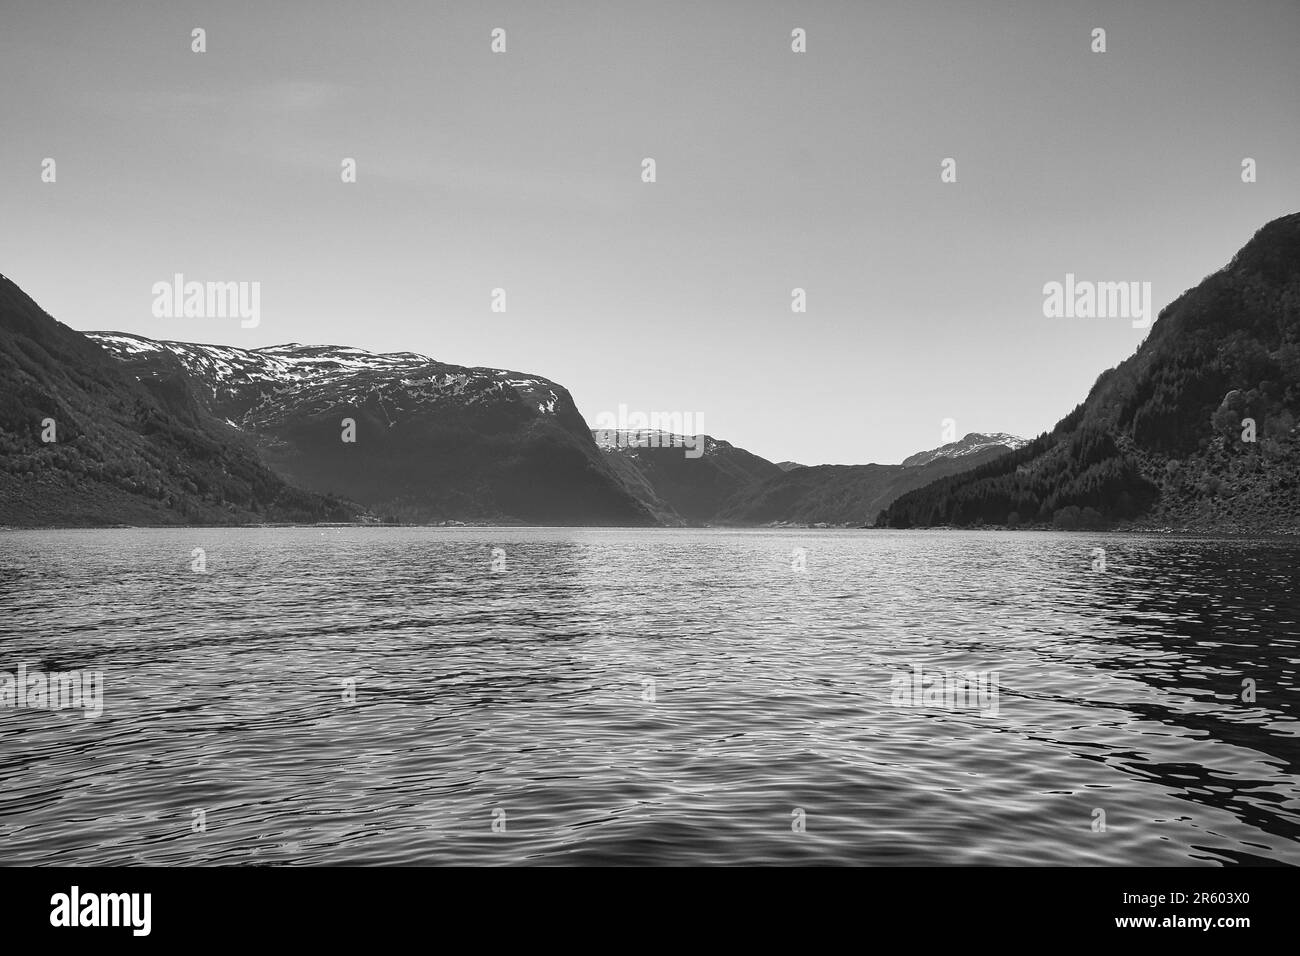 Fjord avec vue sur les montagnes et le paysage du fjord en Norvège en noir et blanc. Paysage avec soleil du nord de la Scandinavie Banque D'Images